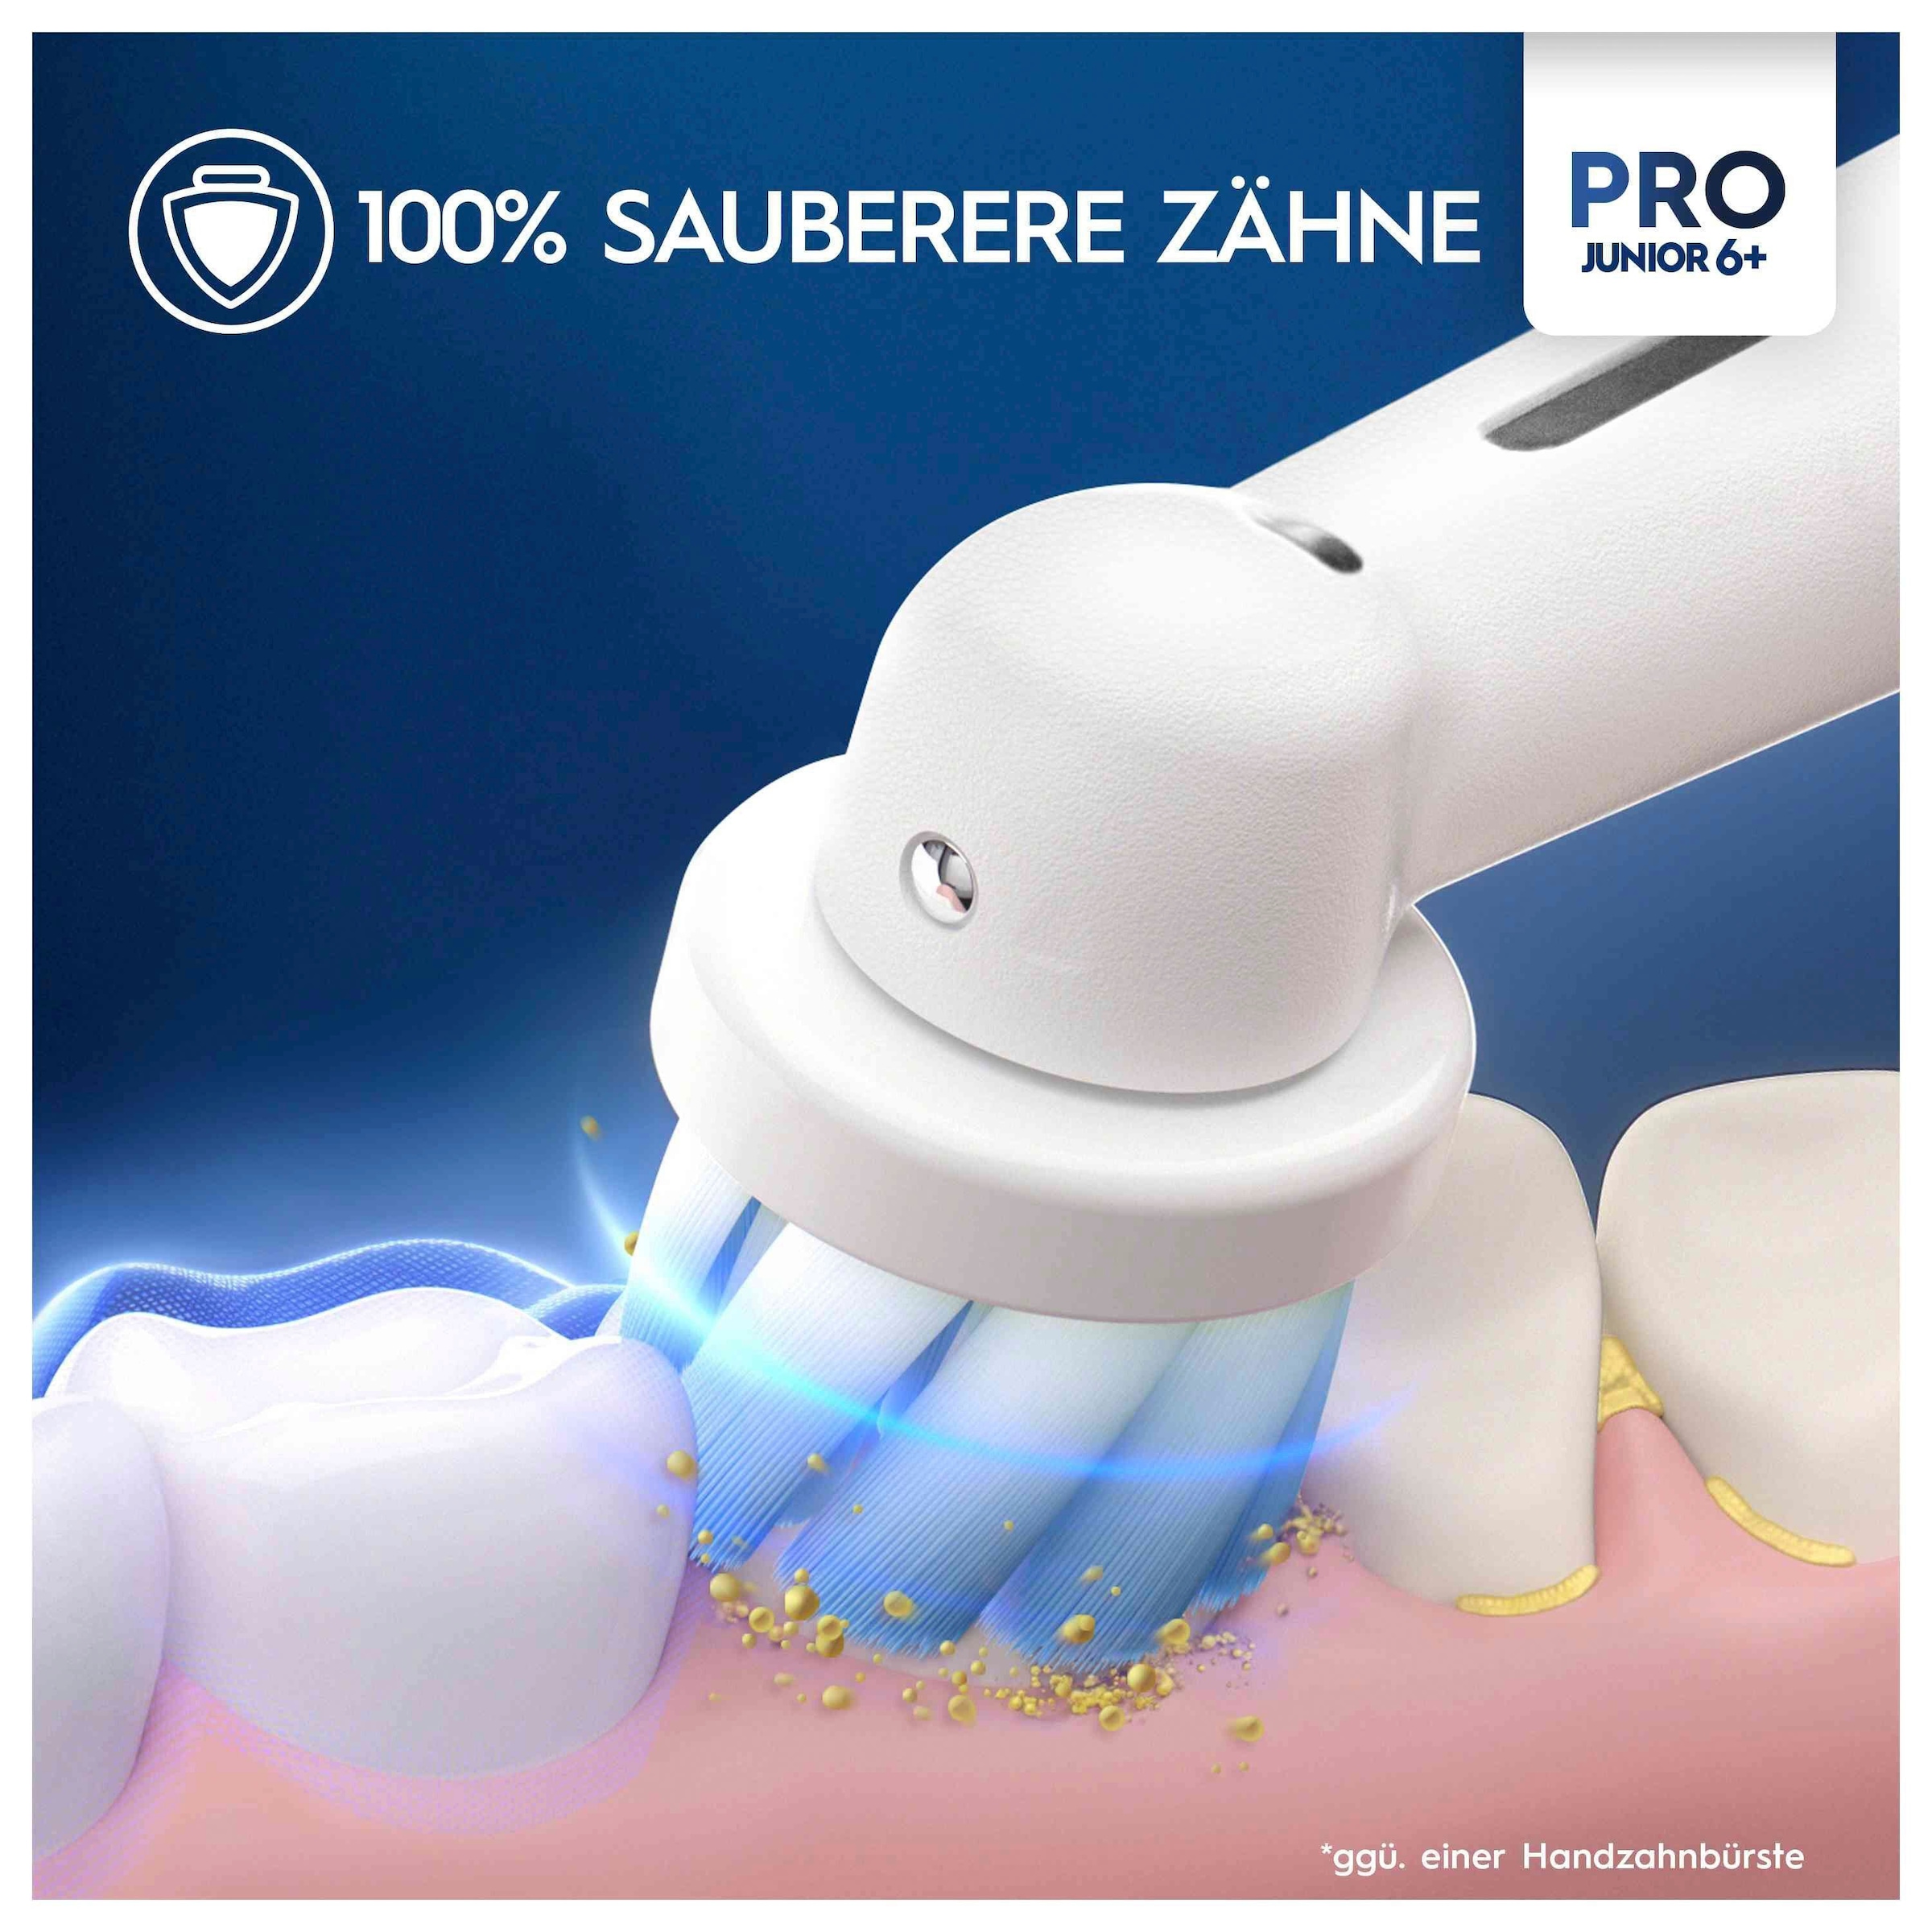 Oral-B Elektrische Zahnbürste »Pro Junior«, 2 St. Aufsteckbürsten, Drucksensor